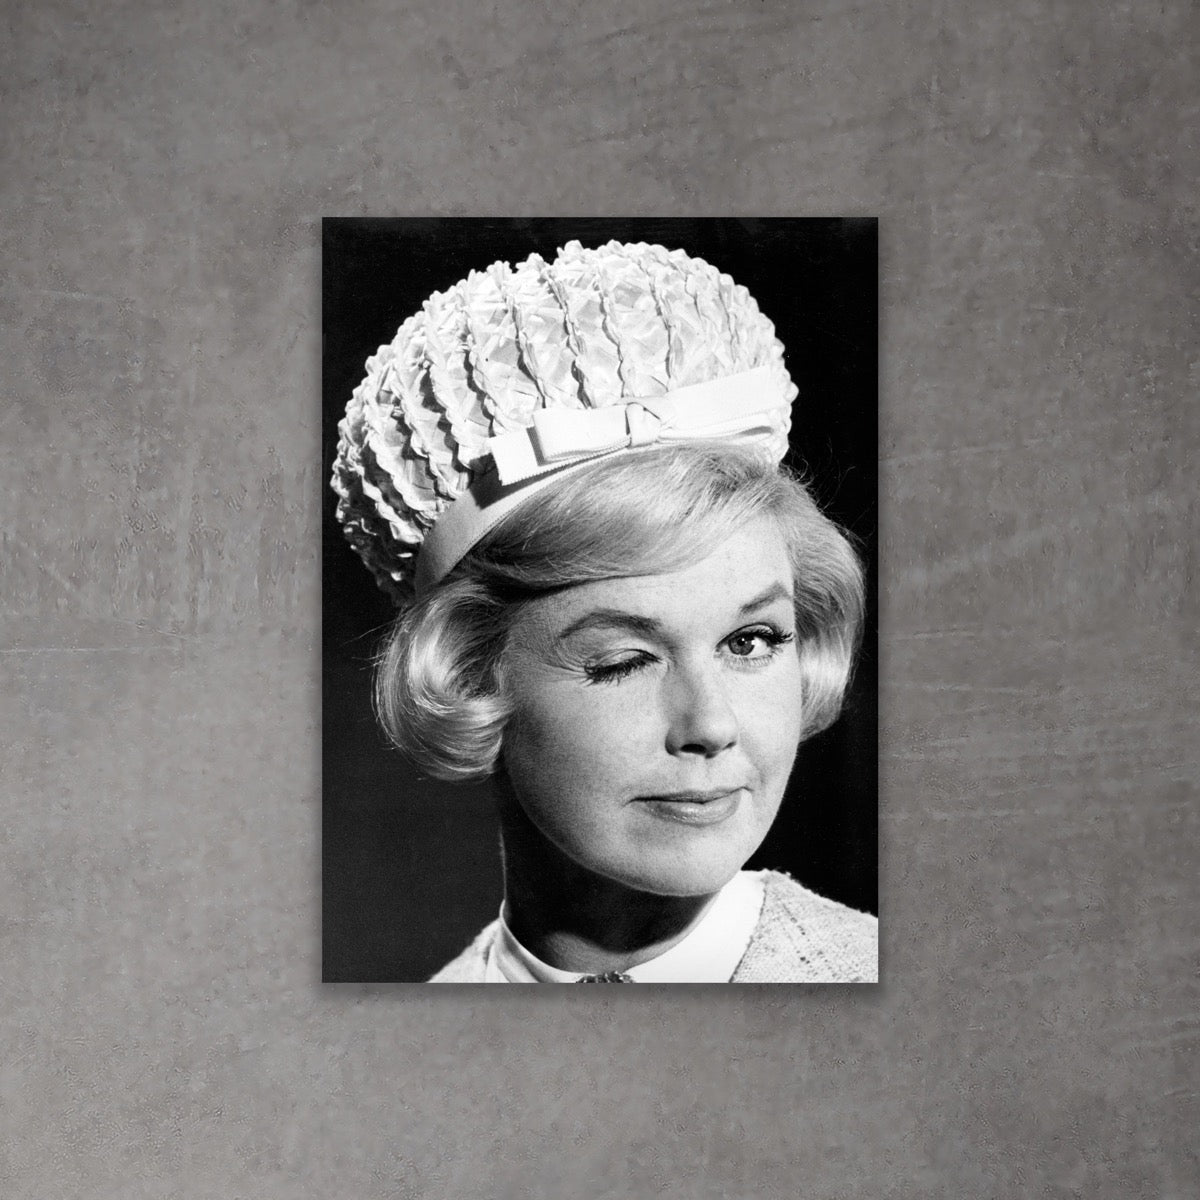 The Charming Portrait | Doris Day [0187]